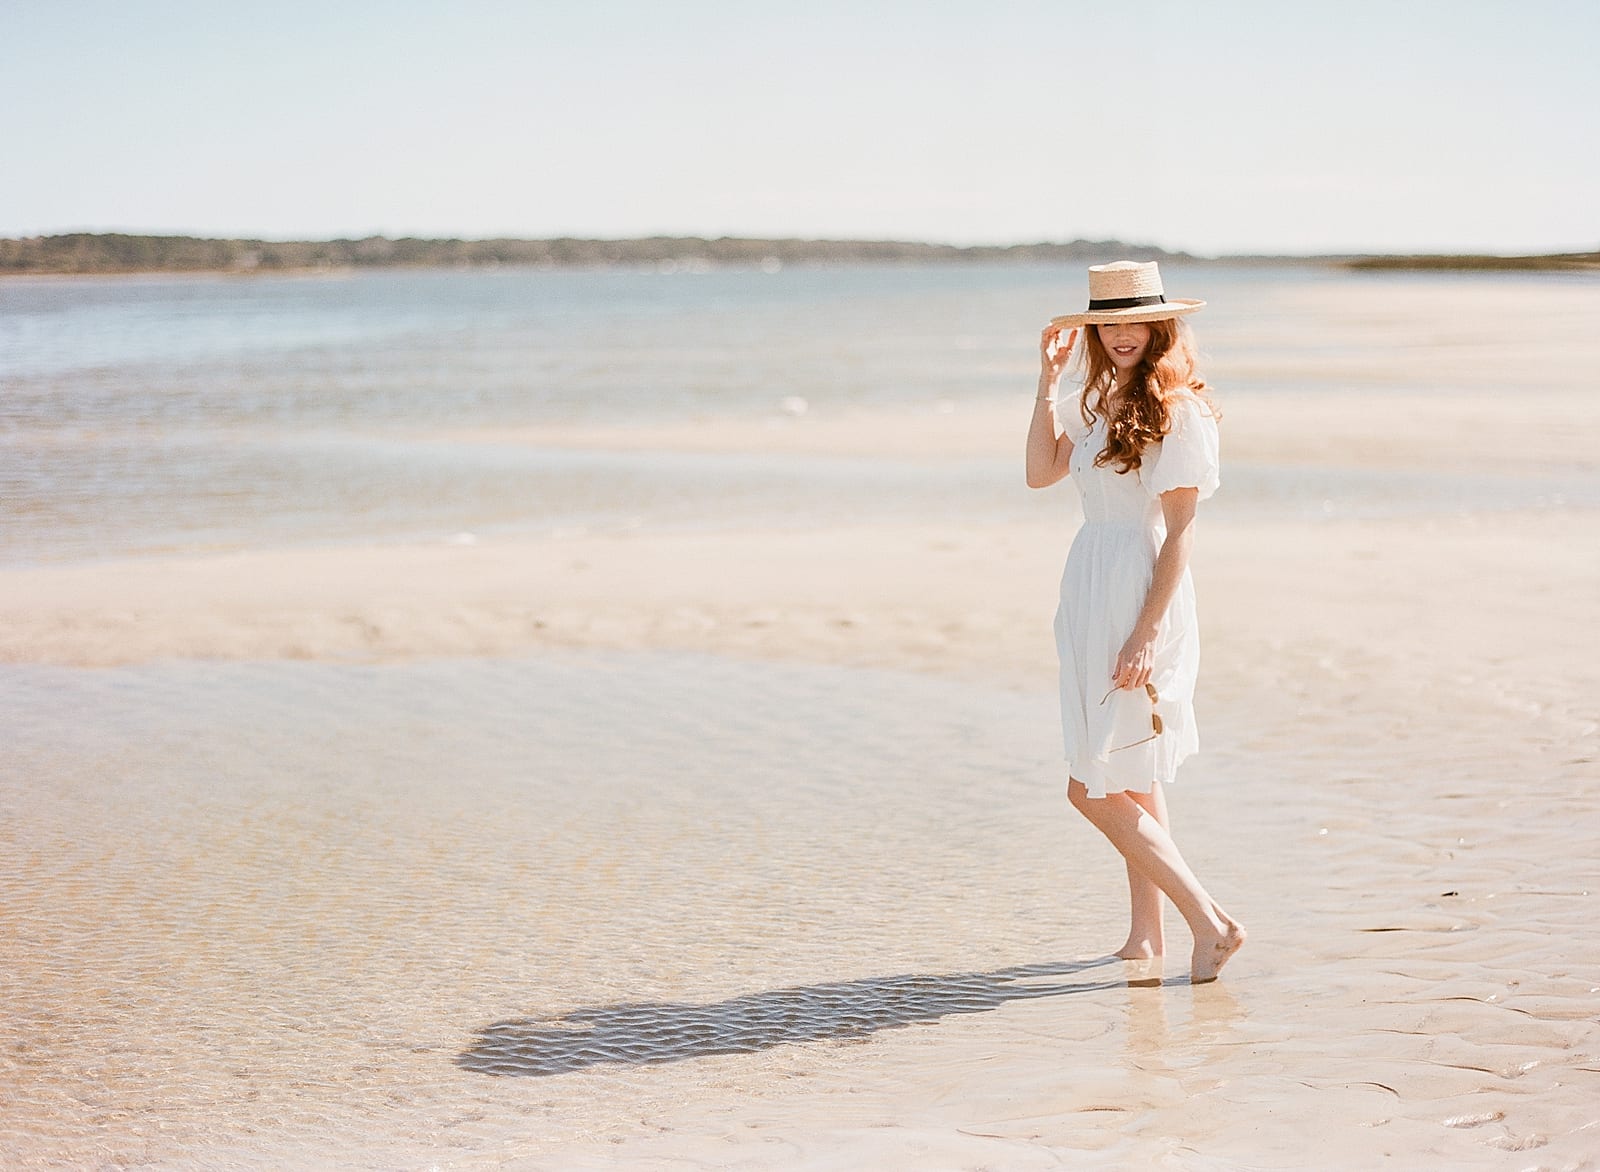 Beaufort SC Girl on beach in White Dress Photo